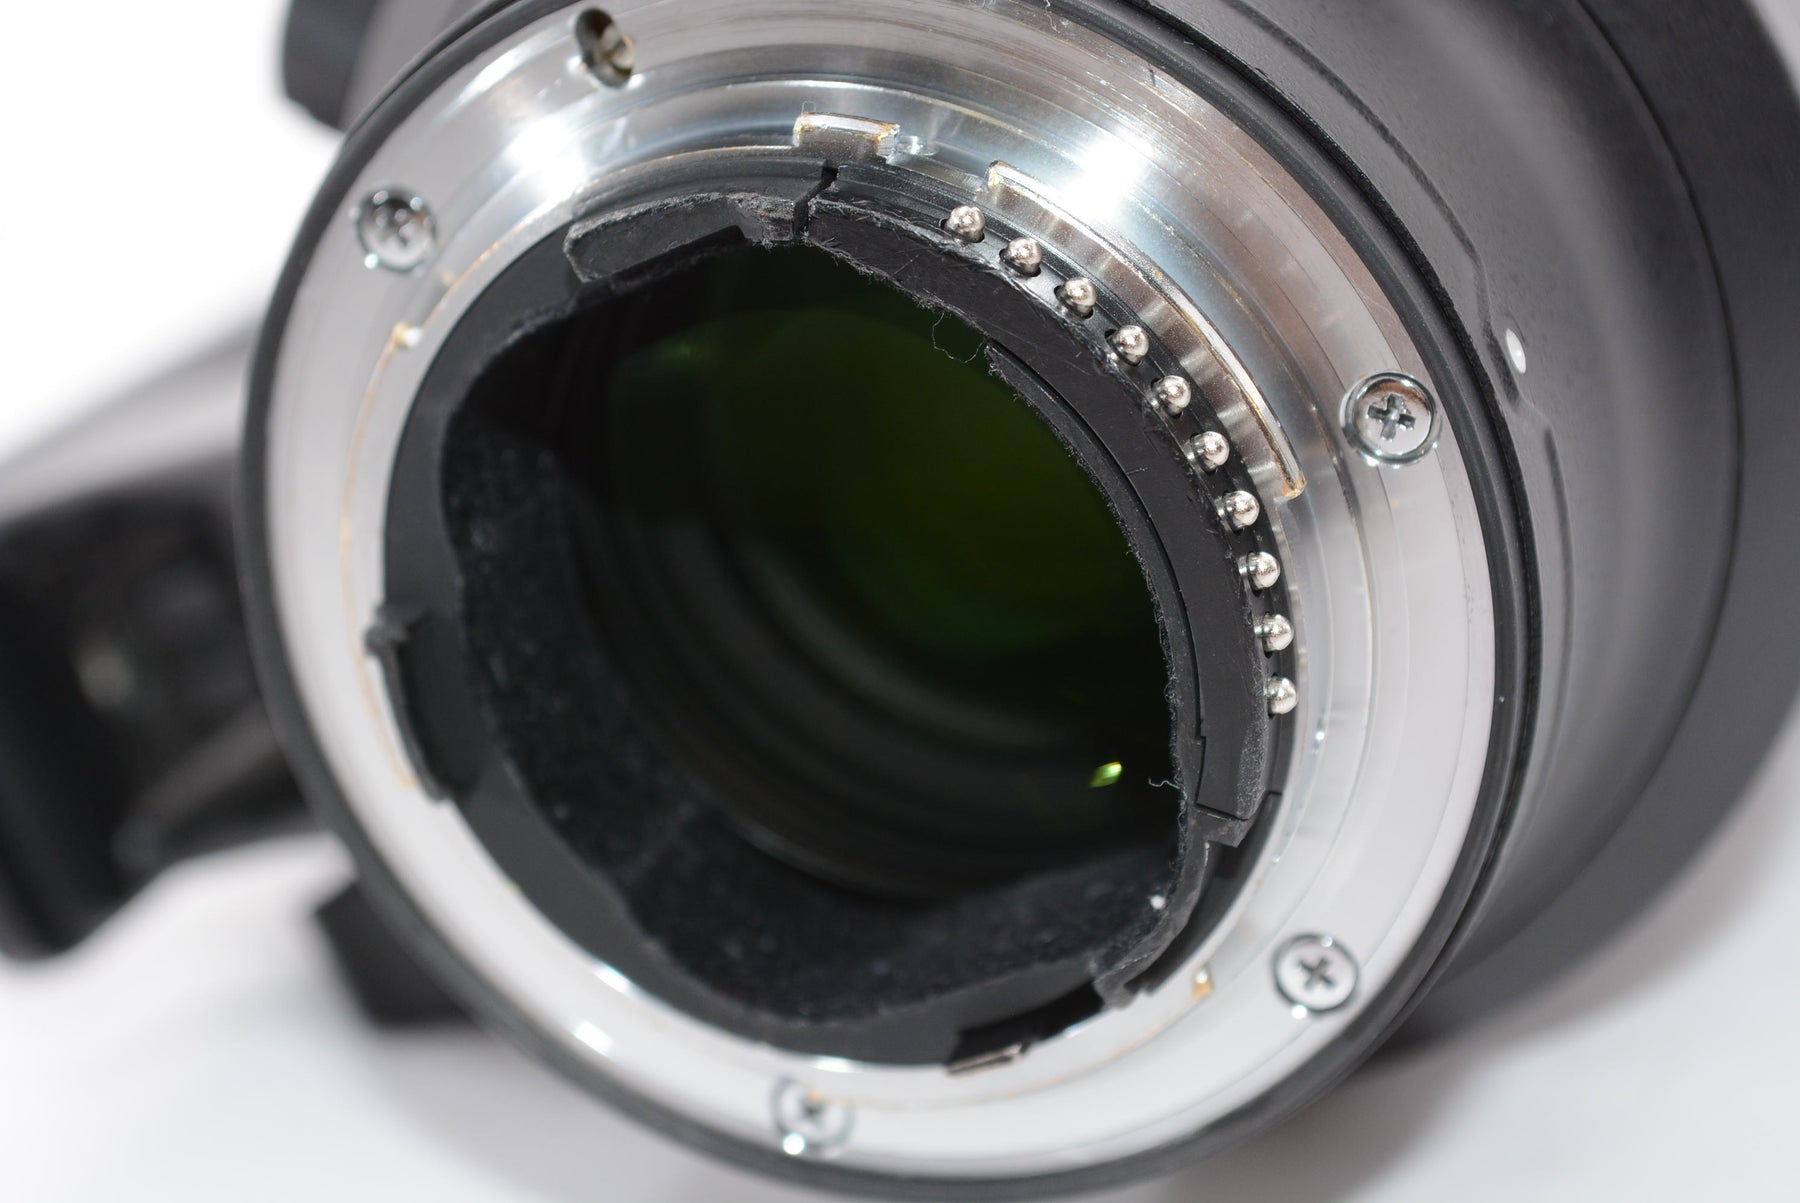 【外観並級】Nikon 望遠ズームレンズ AF-S NIKKOR 70-200mm f/2.8G ED VR II フルサイズ対応